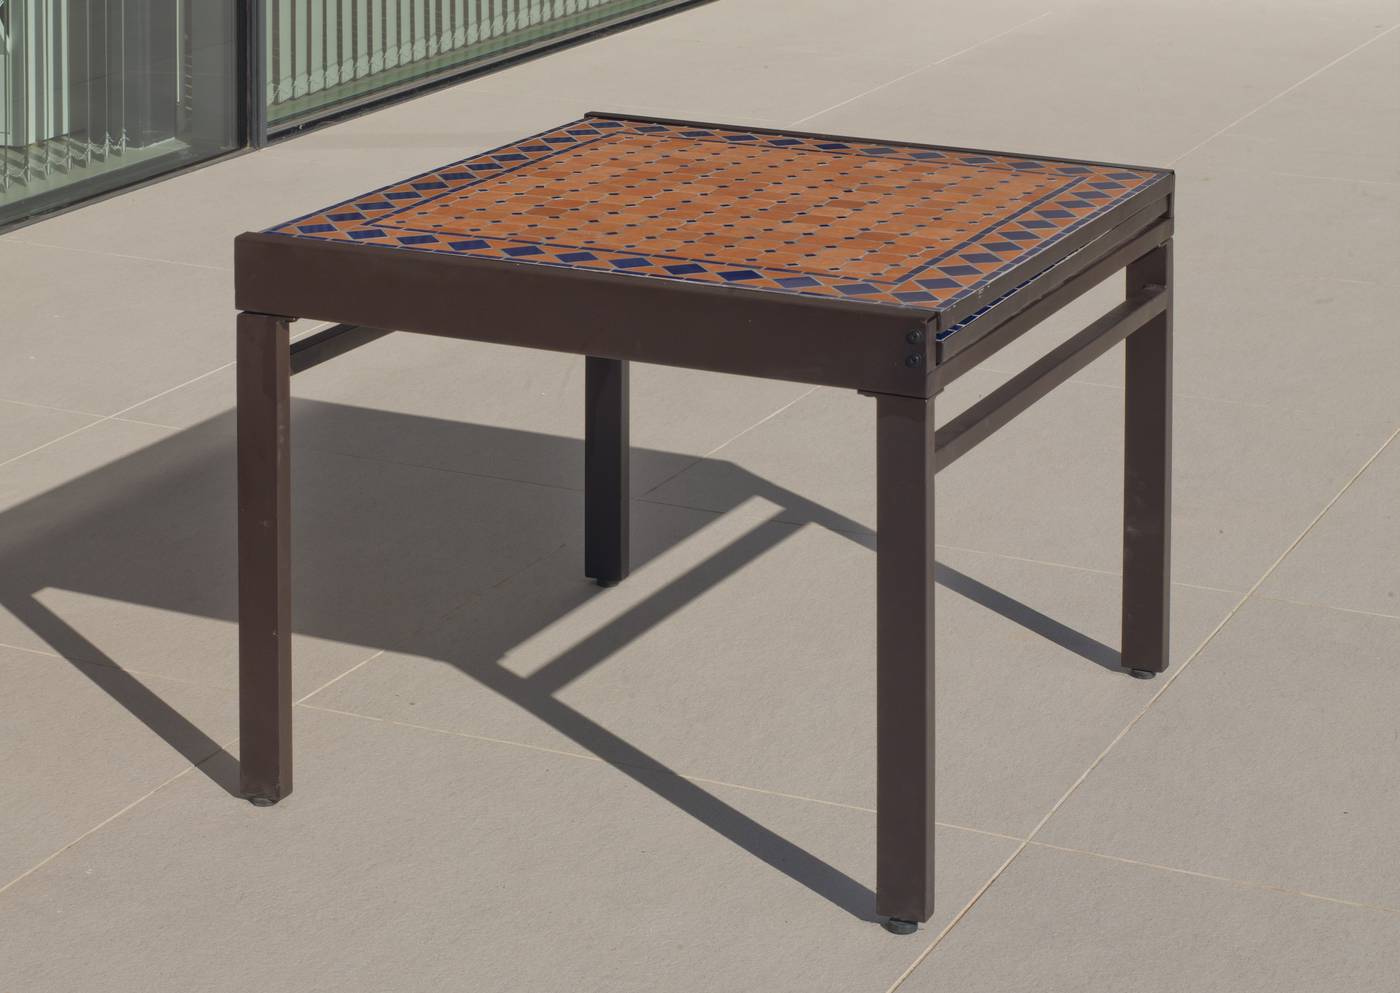 Set Mosaico Corinto-Marzia - Conjunto mosaico para jardín: mesa extensible de acero forjado con tablero mosaico + 6 sillas de ratán sintético con cojines